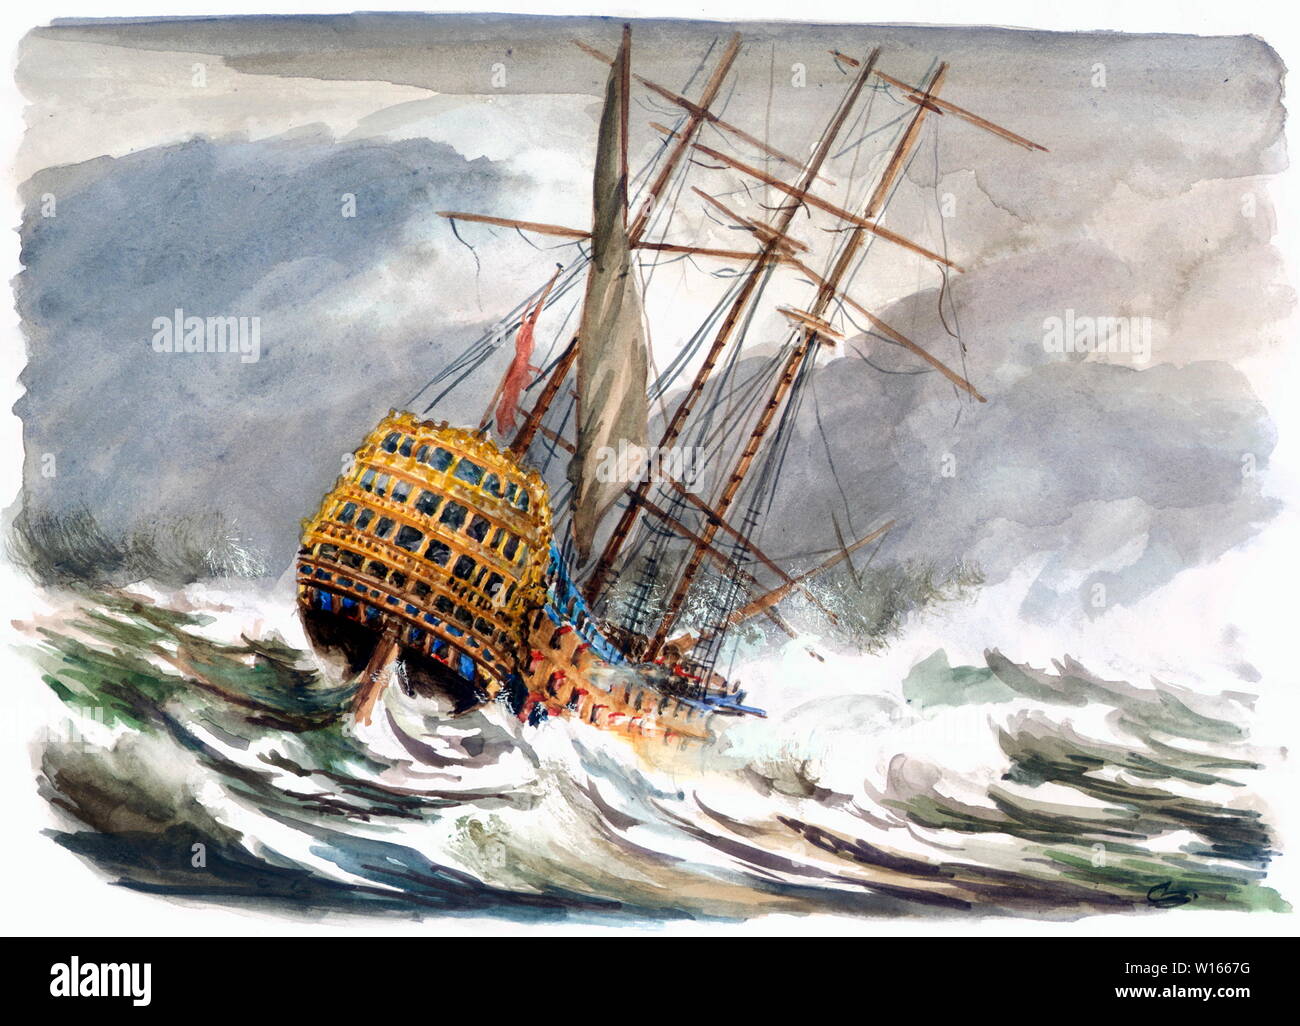 AJAXNTPHOTO. 1744-2008 - FLAGSHIP relitto scoperto - ammiraglio SIR JOHN BALCHEN nave ammiraglia HMS Victory, 6TH Nave da Guerra del nome, fu a lungo creduto di avere colpito CASQUETS rocce, a ovest di Alderney, Isole del Canale, durante una violenta tempesta sulla notte del 4 ottobre, 1744. Successiva SCOPERTA DA PARTE DEL GOVERNO DEGLI STATI UNITI In base ODYSSSEY MARINE EXPLORATION INC ha trovato il relitto rimane a sud della contea di Devon PORT SALCOMBE nel 2008, quasi 60 miglia (100 km) dalla posizione originale PENSATO PER ESSERE STATA LA WRECKSITE. illustrazione originale © CAROLINE BEAUMONT. REF:1744 relitto Foto Stock